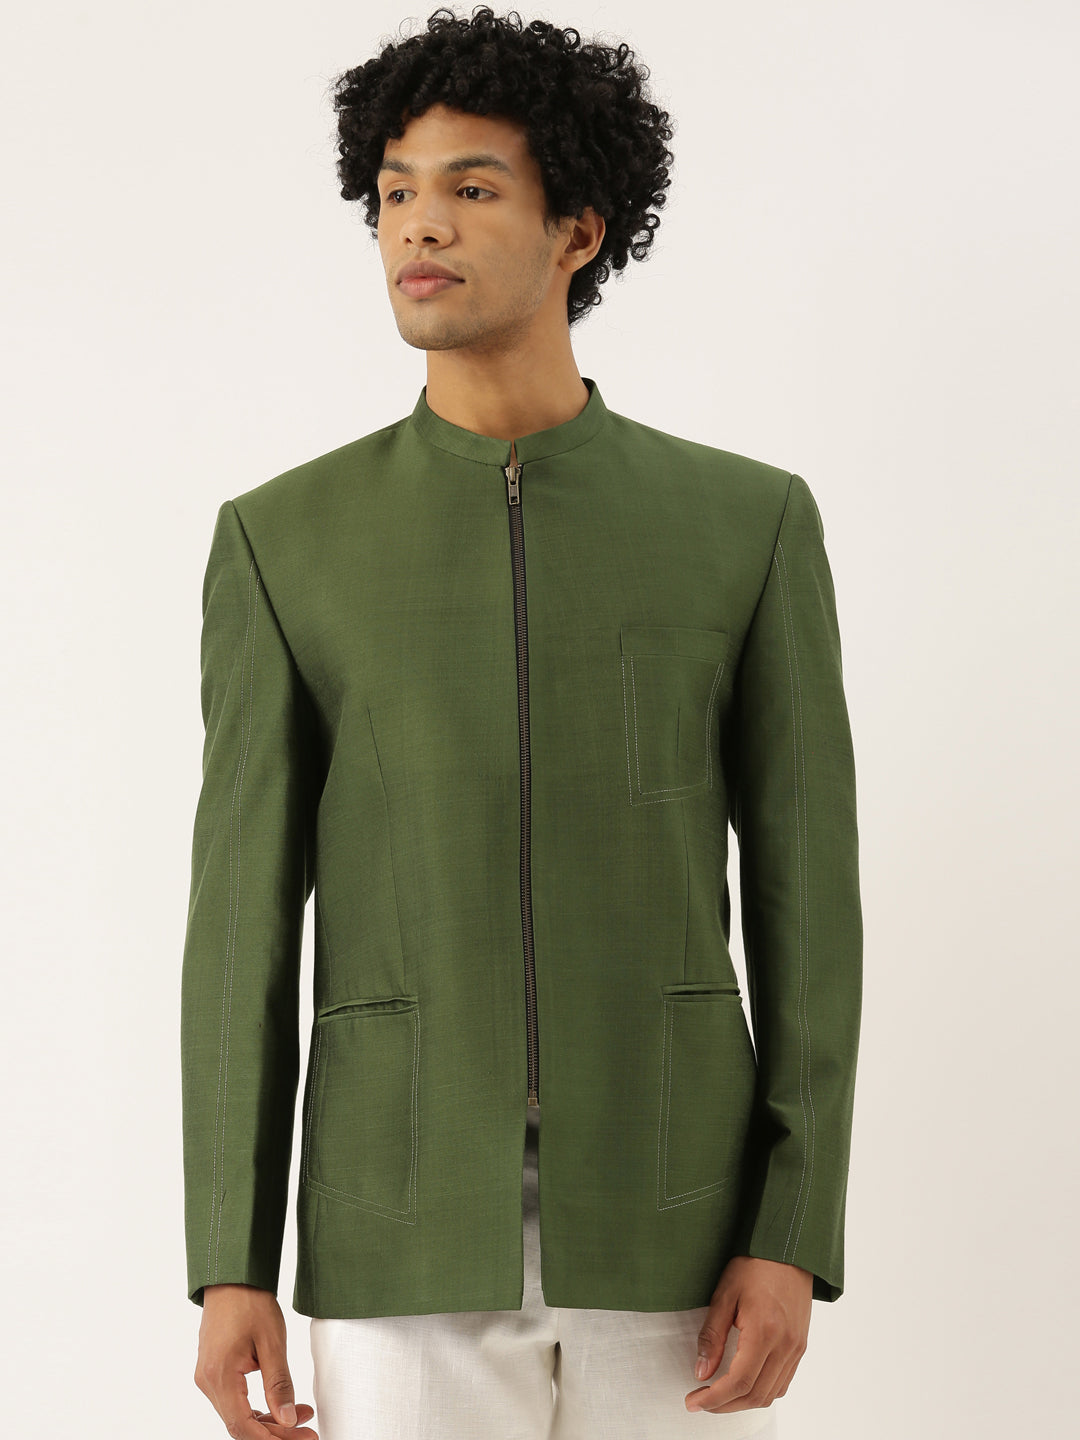 Green Cotton Silk Zipper Jacket - MMJ060